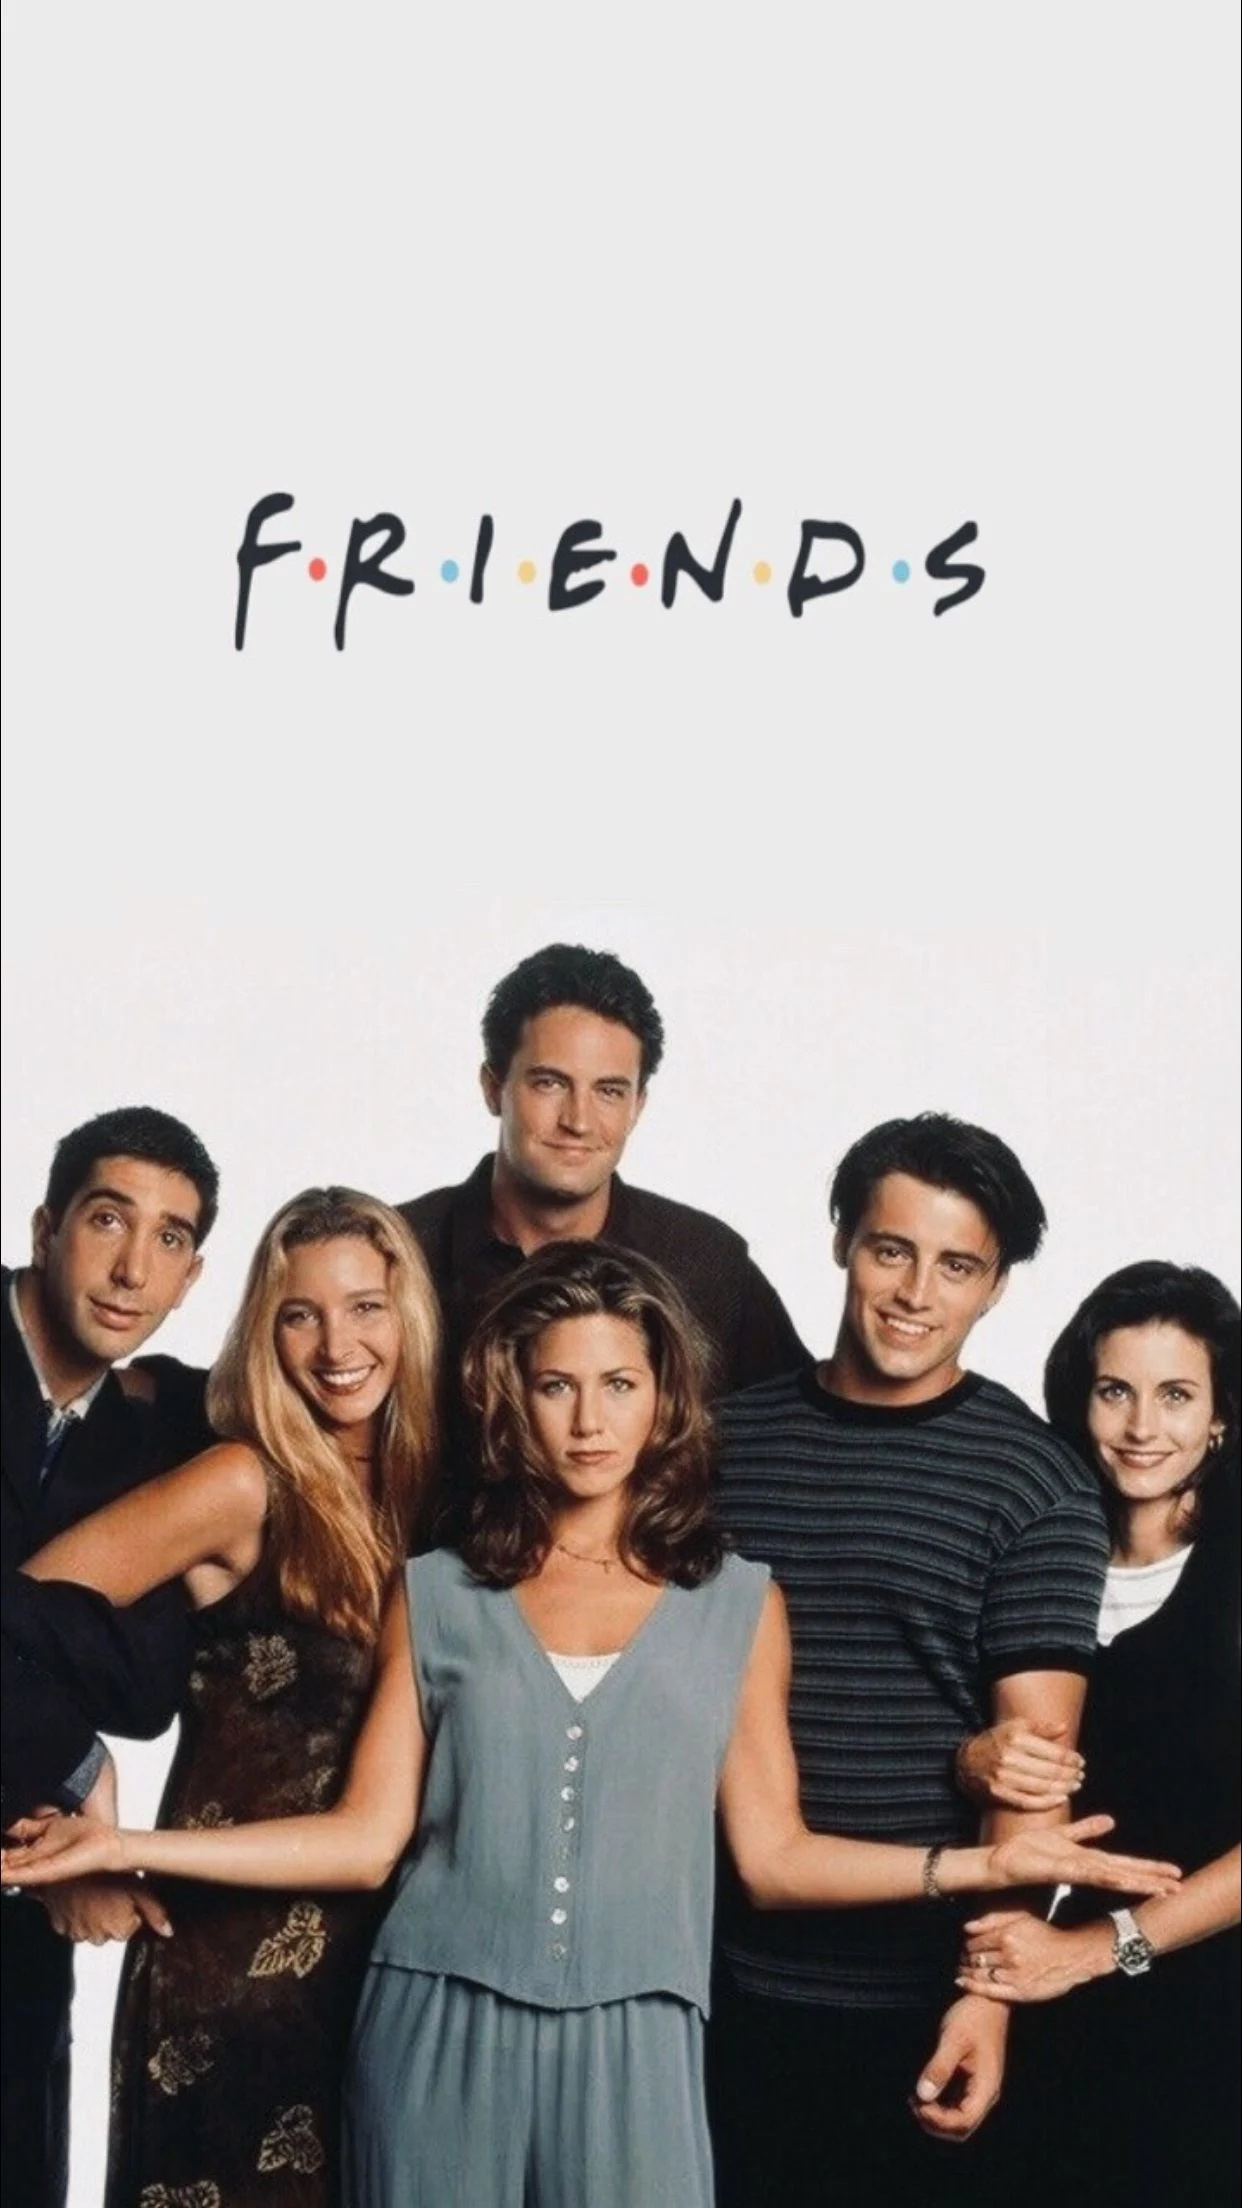 Rachel Green from Friends, Ross Geller wallpapers, Top backgrounds, Friends cast, 1250x2210 HD Handy